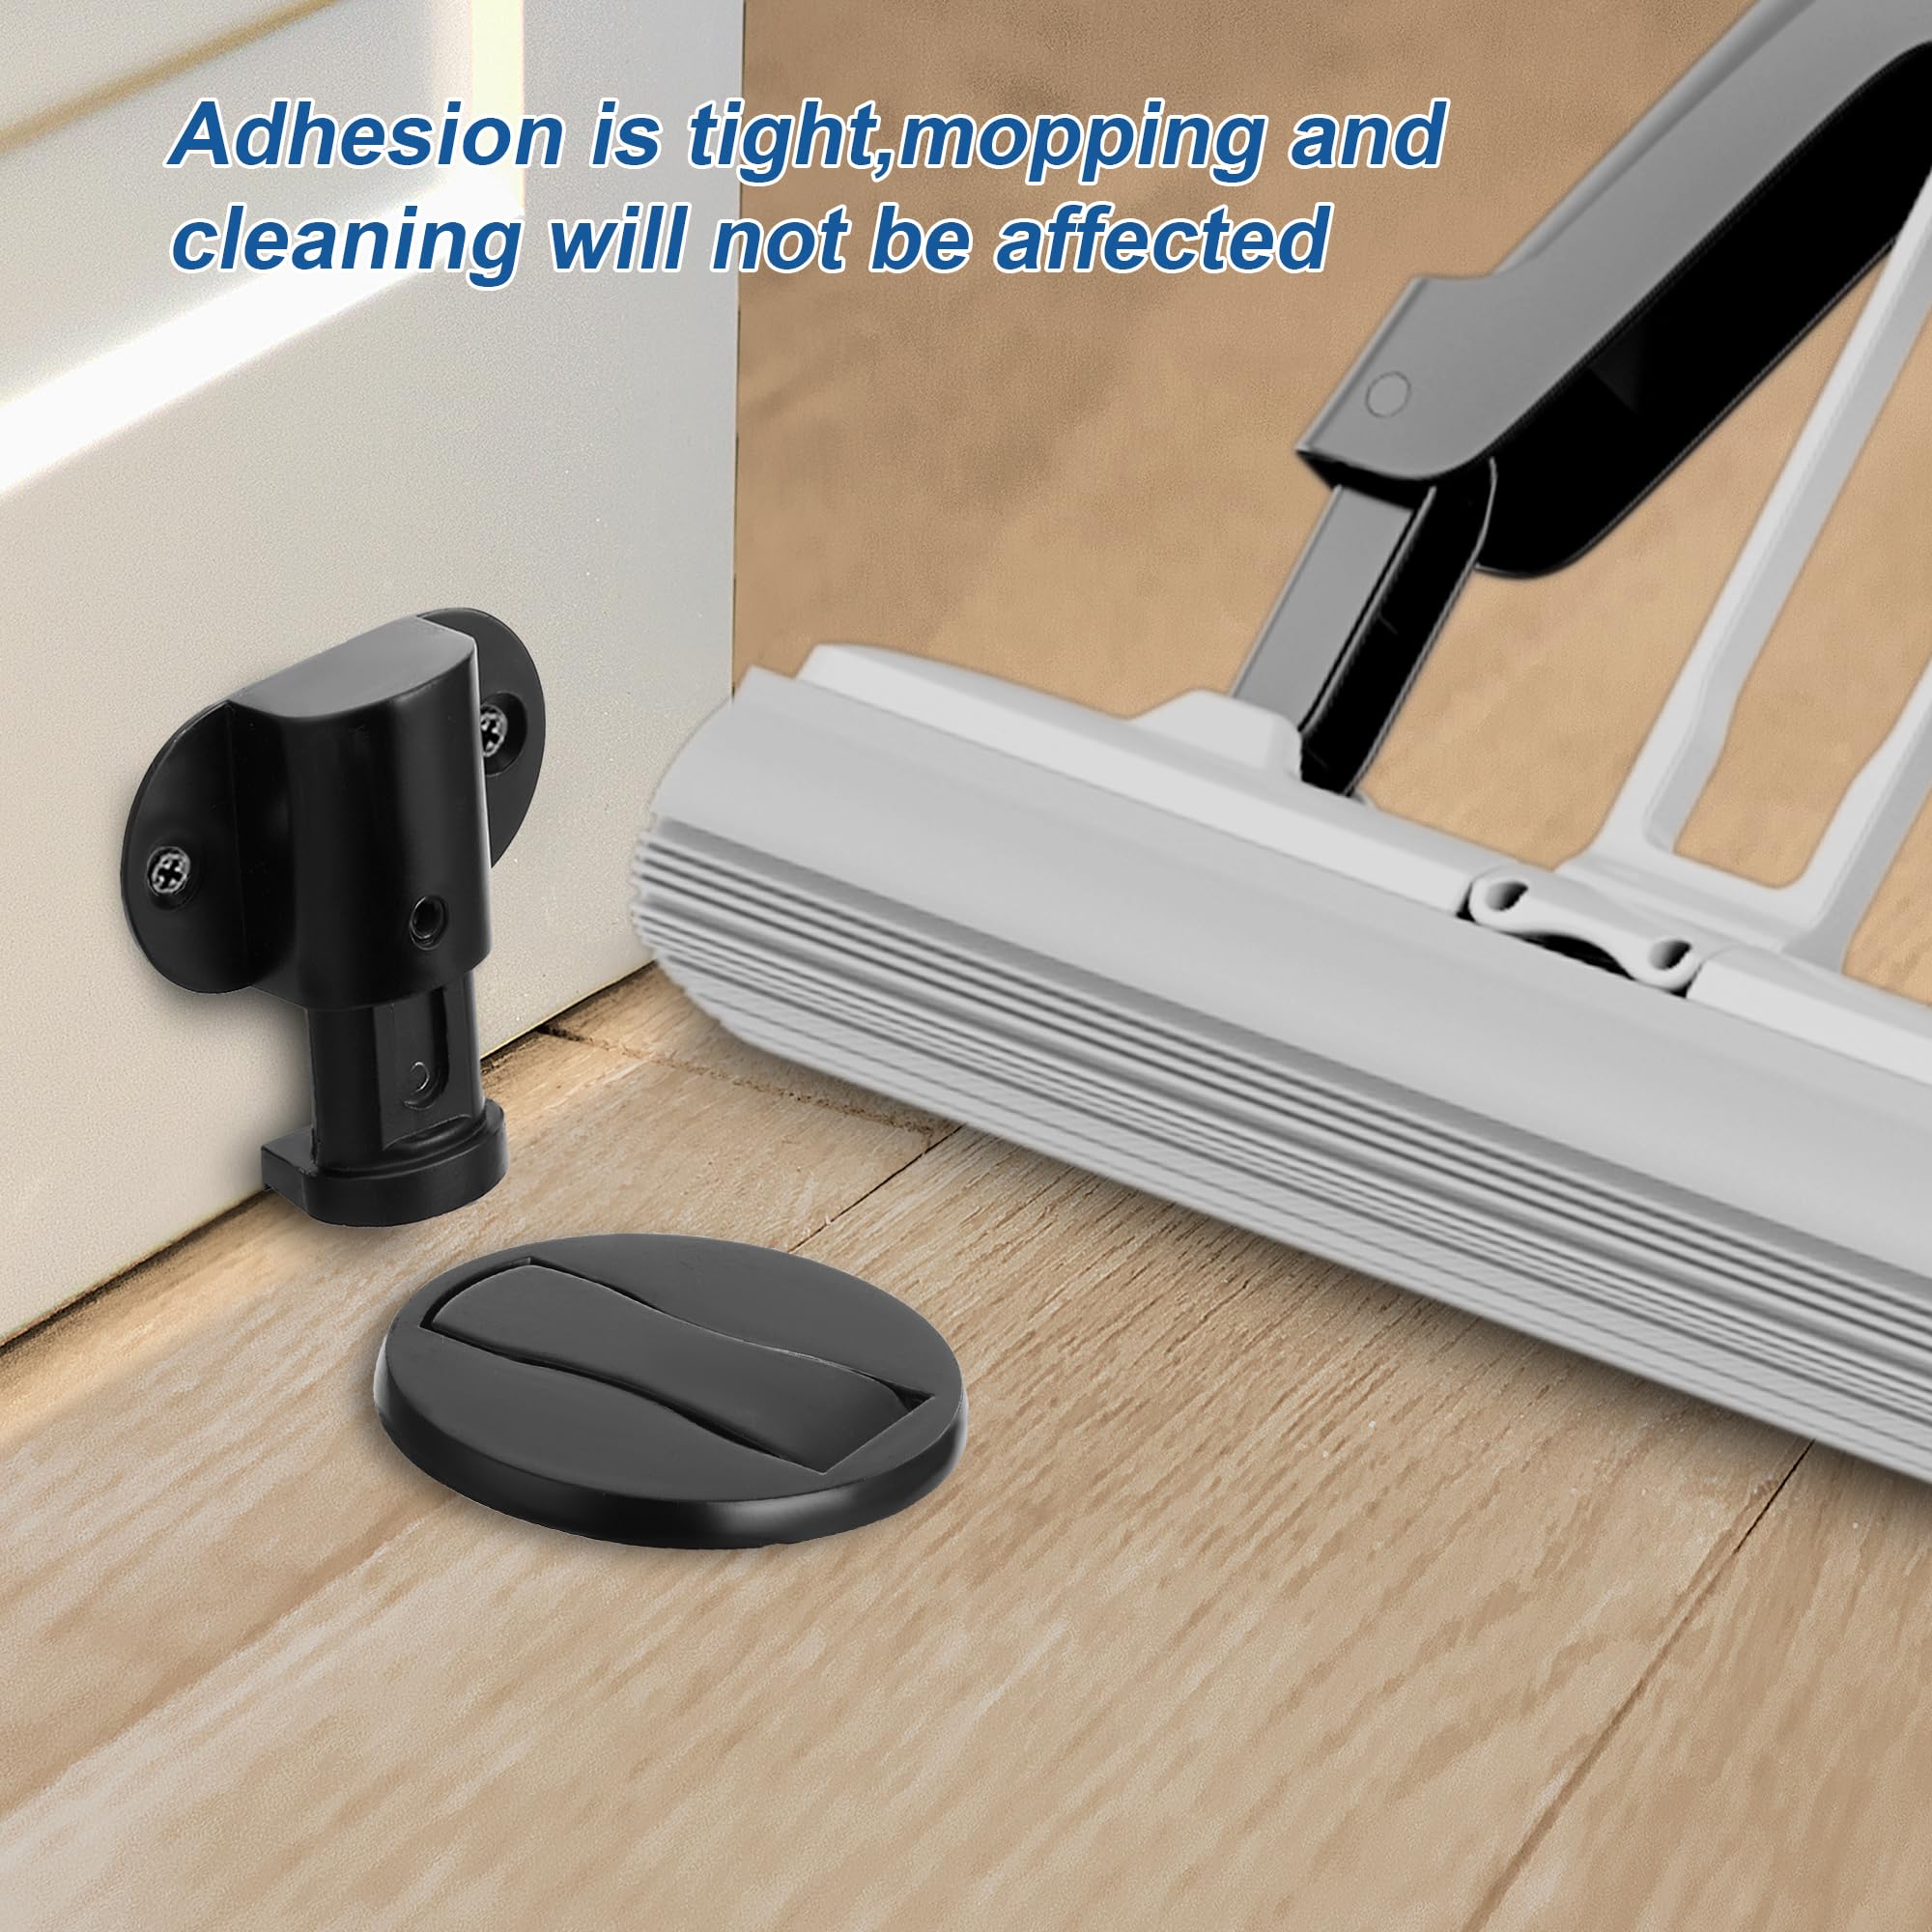 Wewemux 2 Pack Magnetic Door Stop,Adjustable Door Stopper,Floor Mount Door Holder,3M Adhesive No Drilling (Black)…